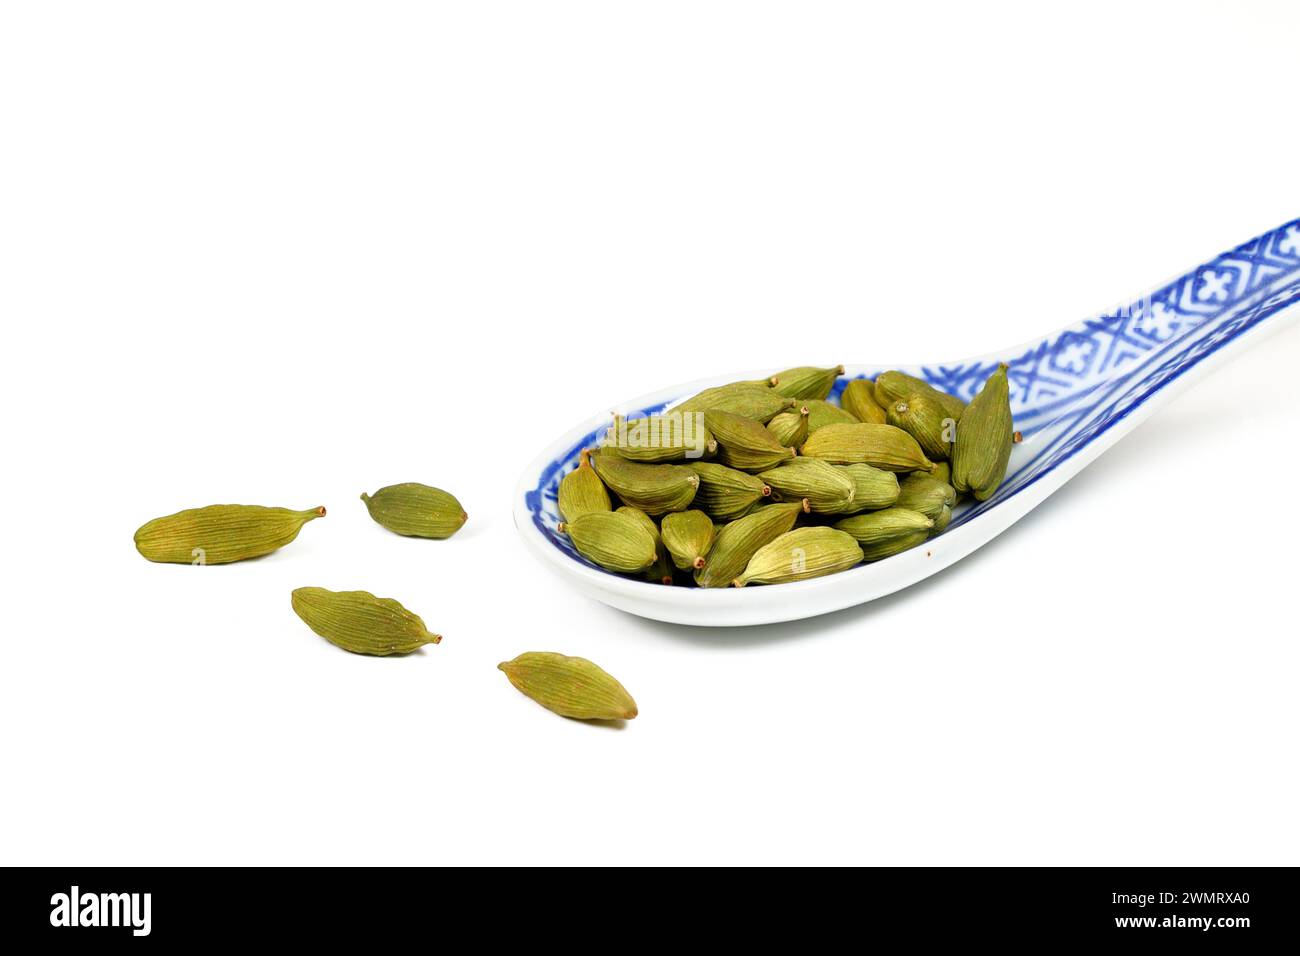 Ein Suppenlöffel getrockneter grüner Kardamomschoten (Elettaria cardamomum) isoliert auf weißem Hintergrund. Ausschnitt zur Illustration und redaktionellen Verwendung. Stockfoto